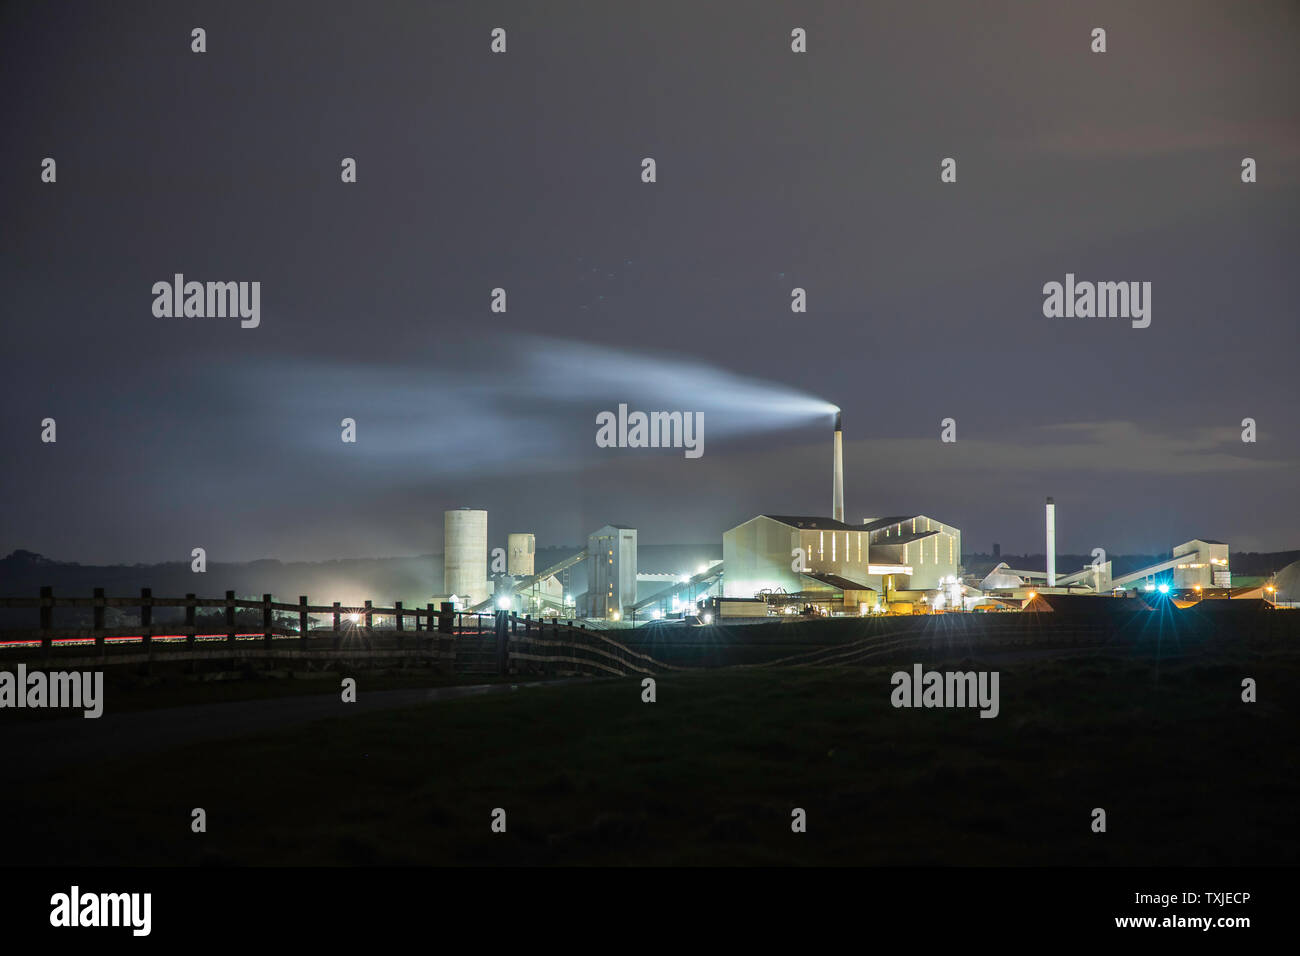 Exposition longue durée de la mine de potasse / polyhalite dans la nuit, montrant serre plume au vent. Boulby mine, Redcar and Cleveland, UK Banque D'Images